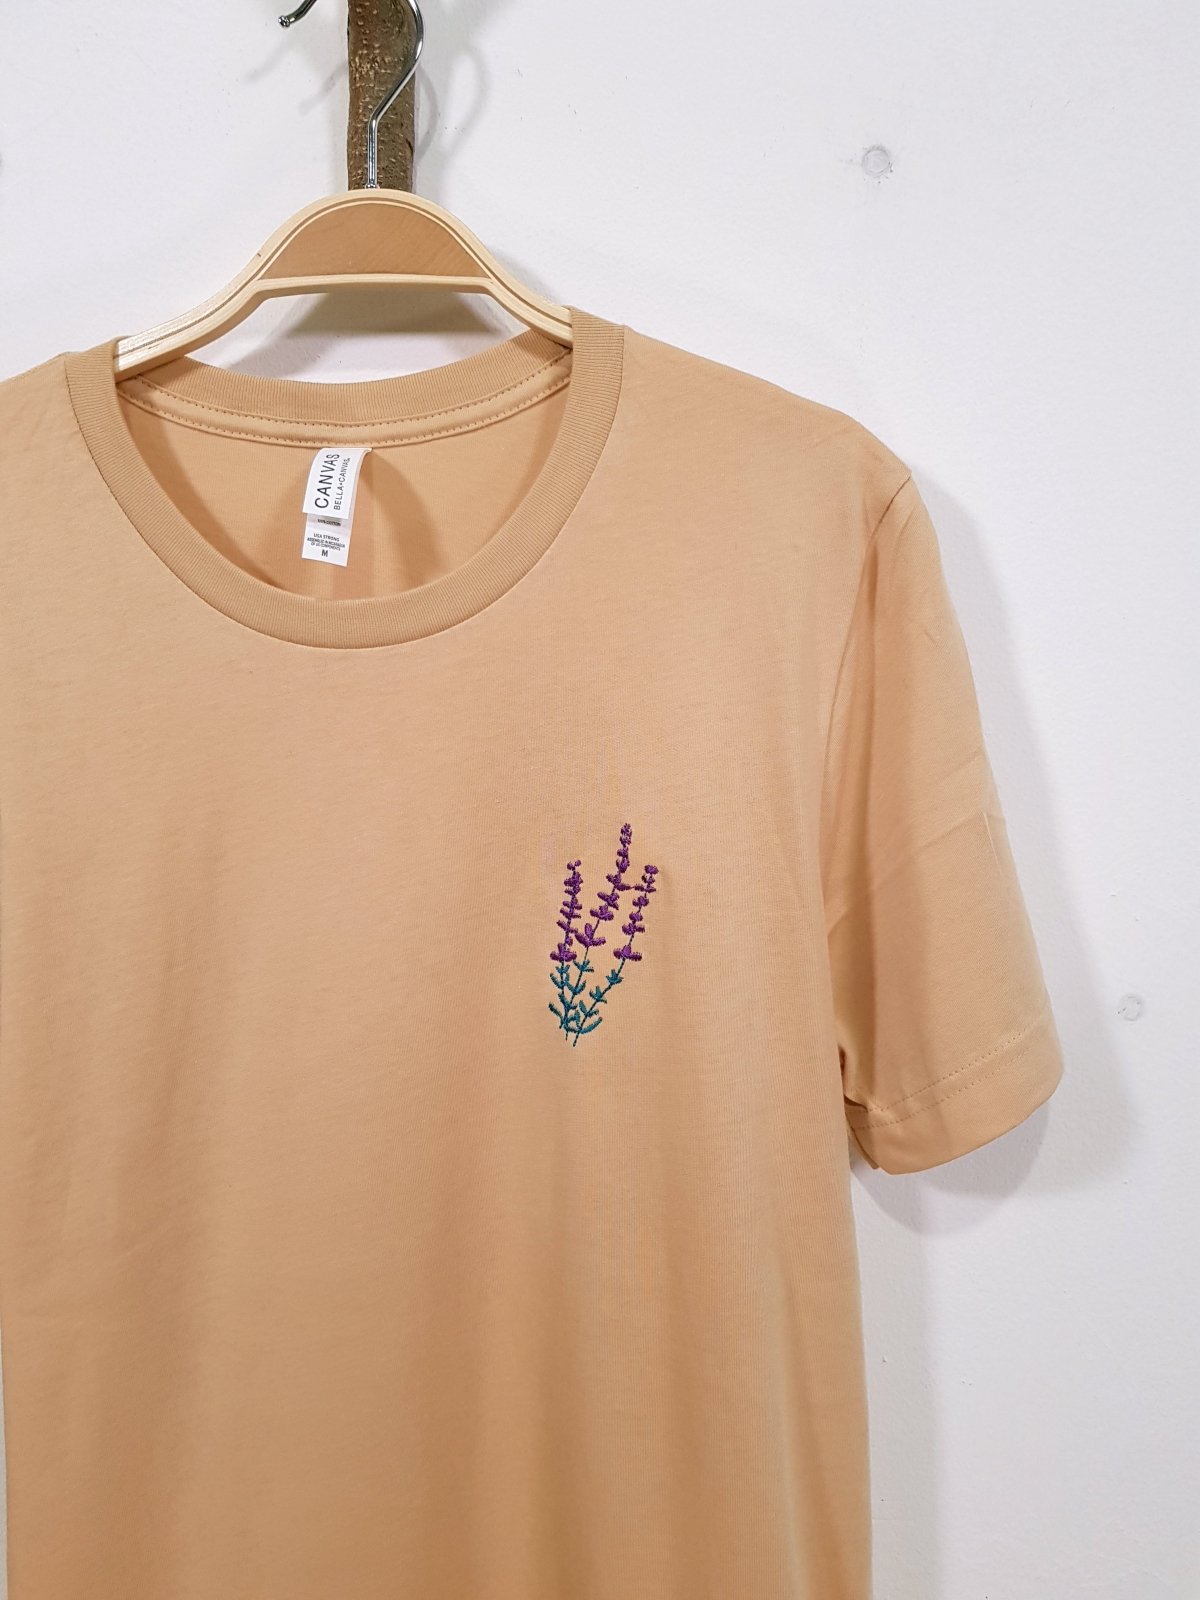 lavender sand dune unisex t-shirt te koop in de webshop van Almost Summer Amsterdam